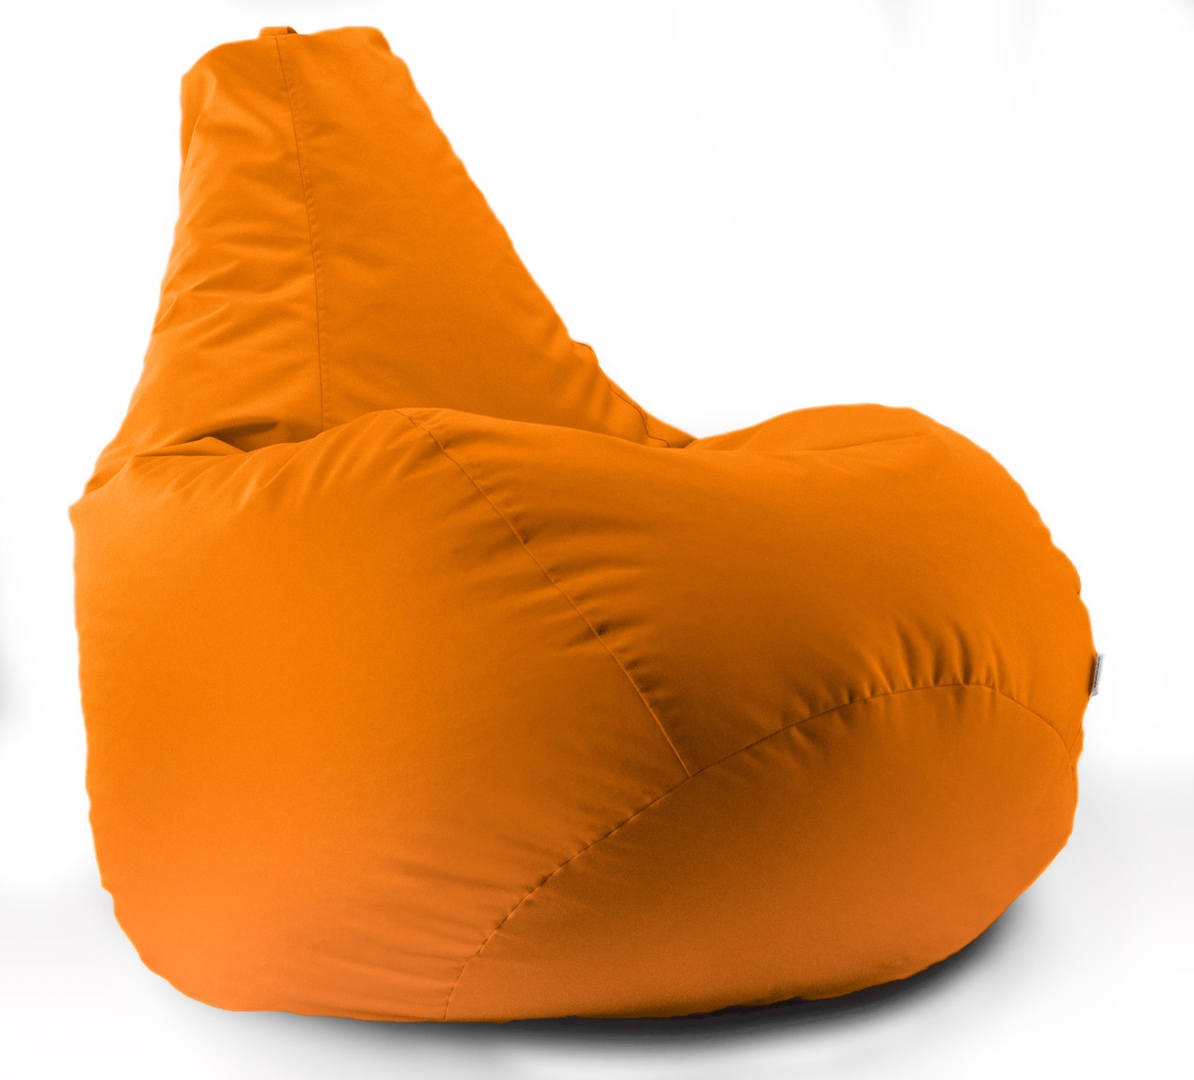 Кресло мешок груша Beans Bag Оксфорд Стронг 100*140 см Оранжевый (hub_vdpxp7)